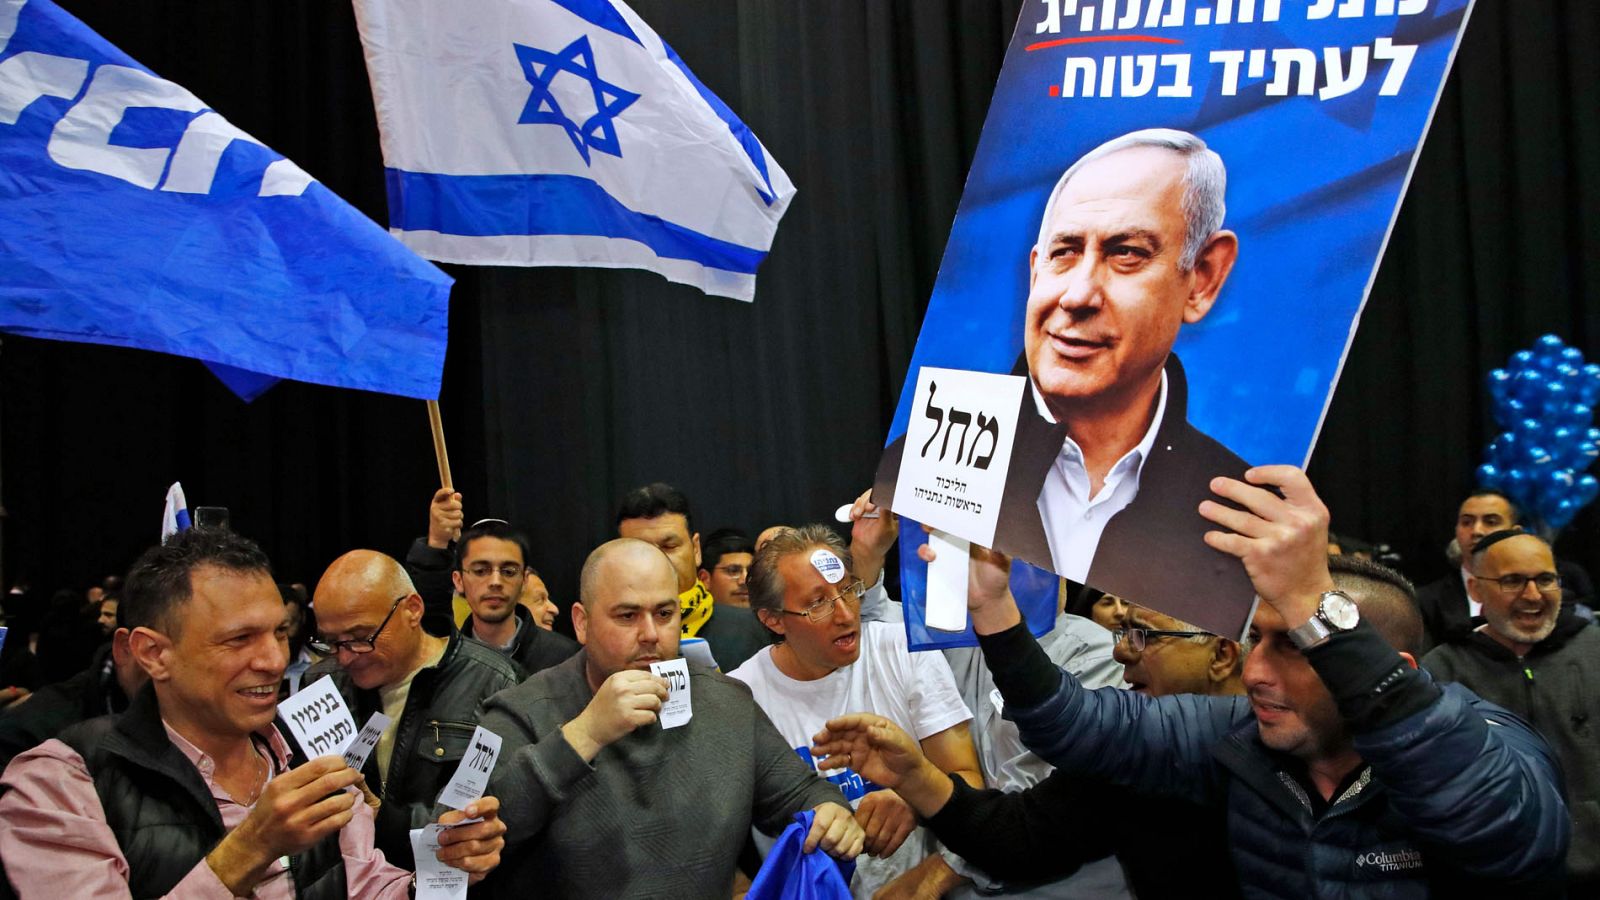 Elecciones Israel | Netanyahu, a un escaño de la mayoría absoluta, según los primeros sondeos - RTVE.es